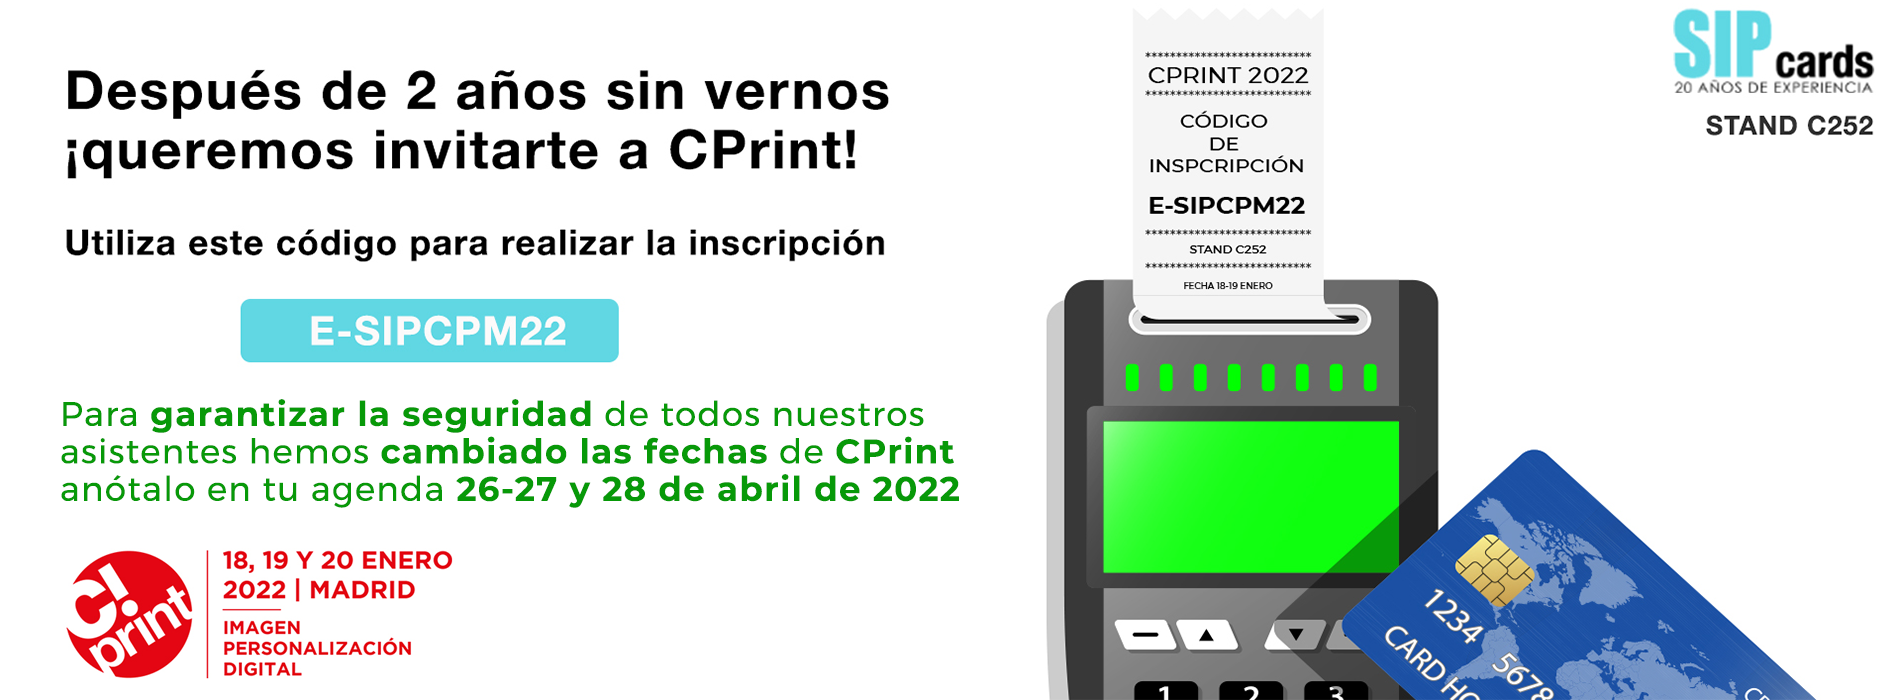 slider cprint nuevo - Sipcards: La mejor oferta de Impresoras y tarjetas PVC